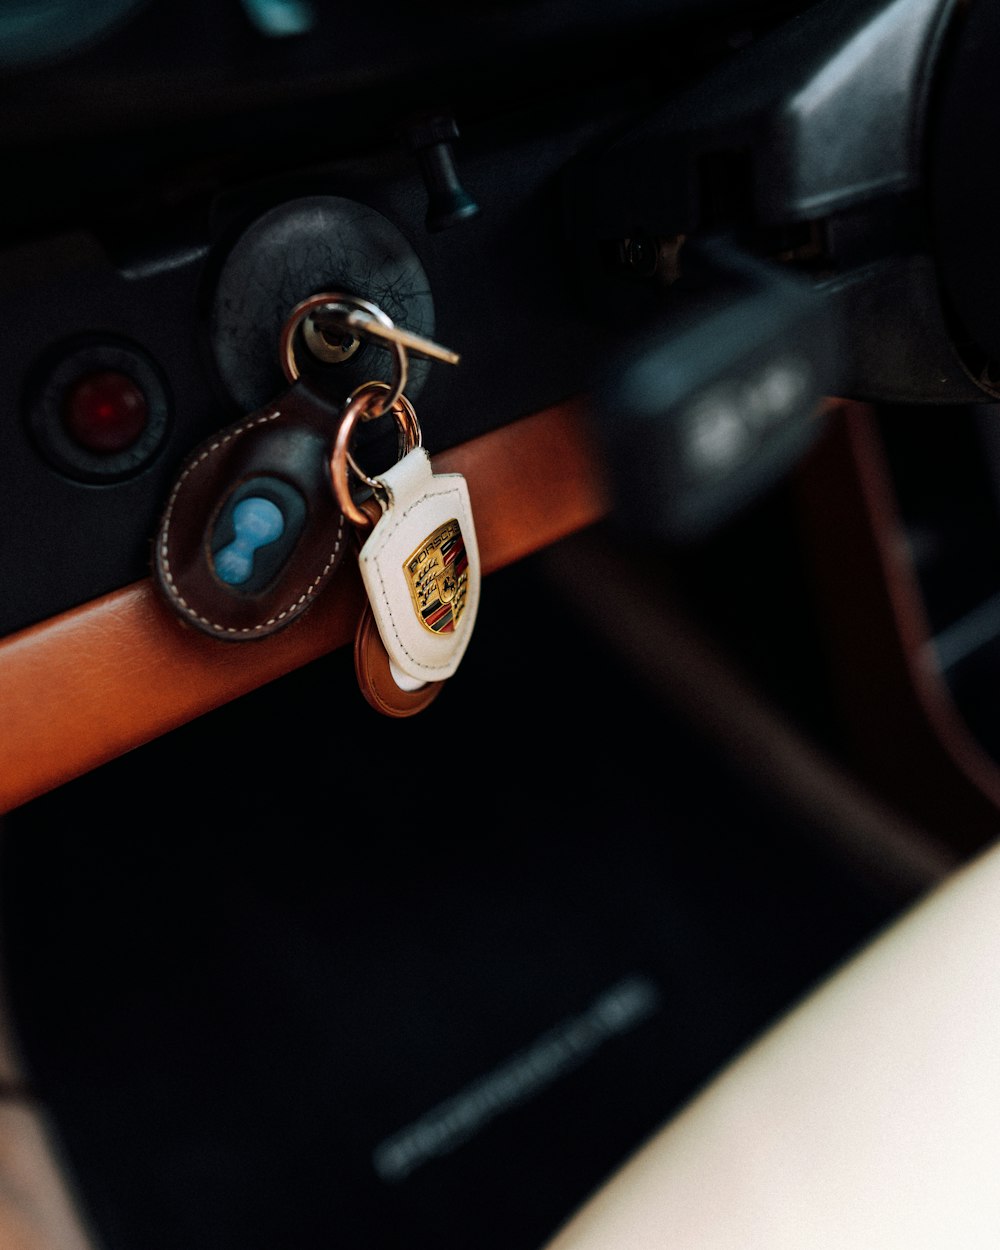 a key on a car